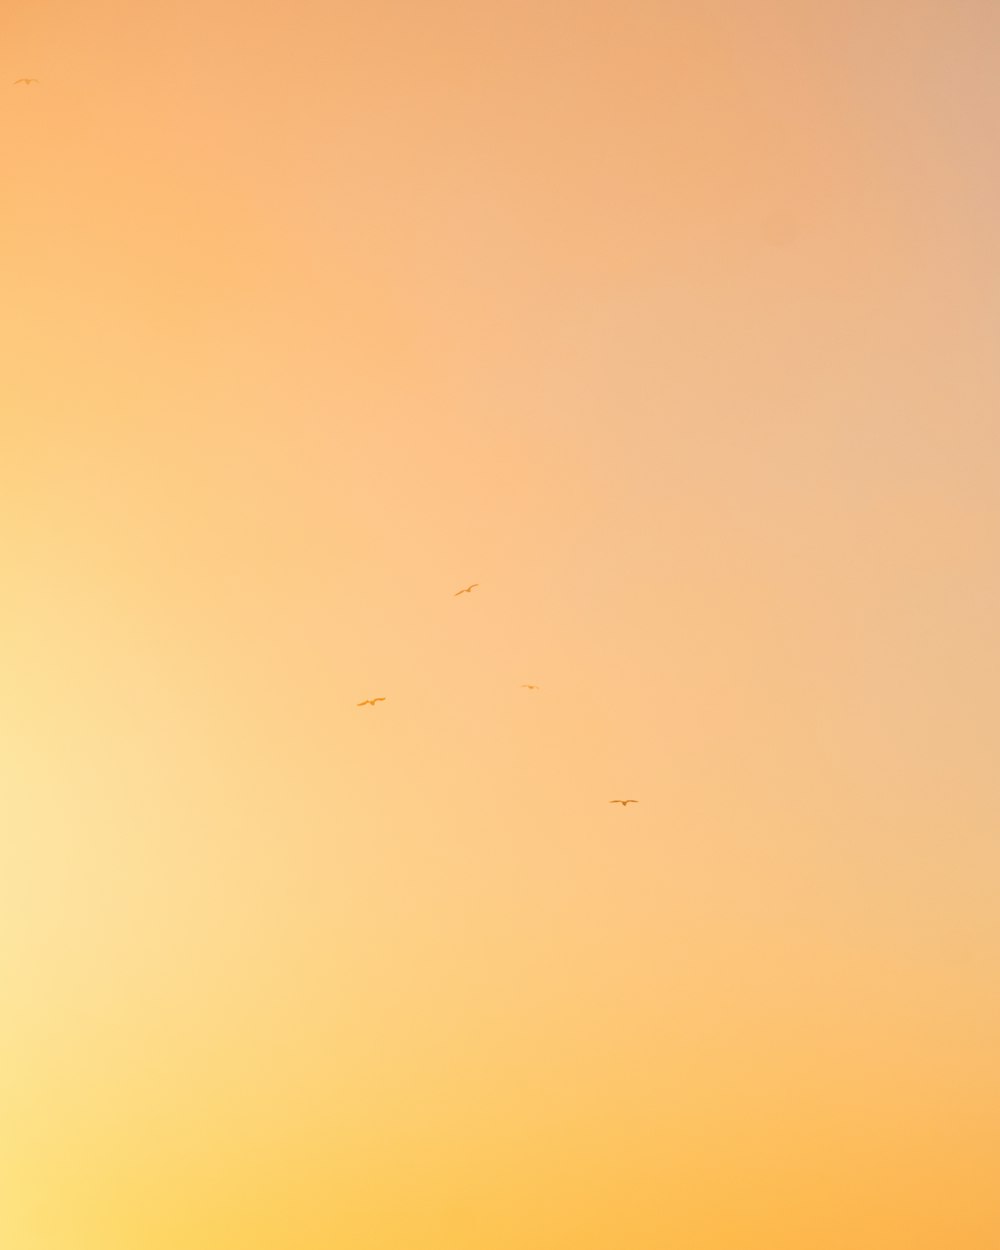 Un grupo de pájaros volando en el cielo al atardecer